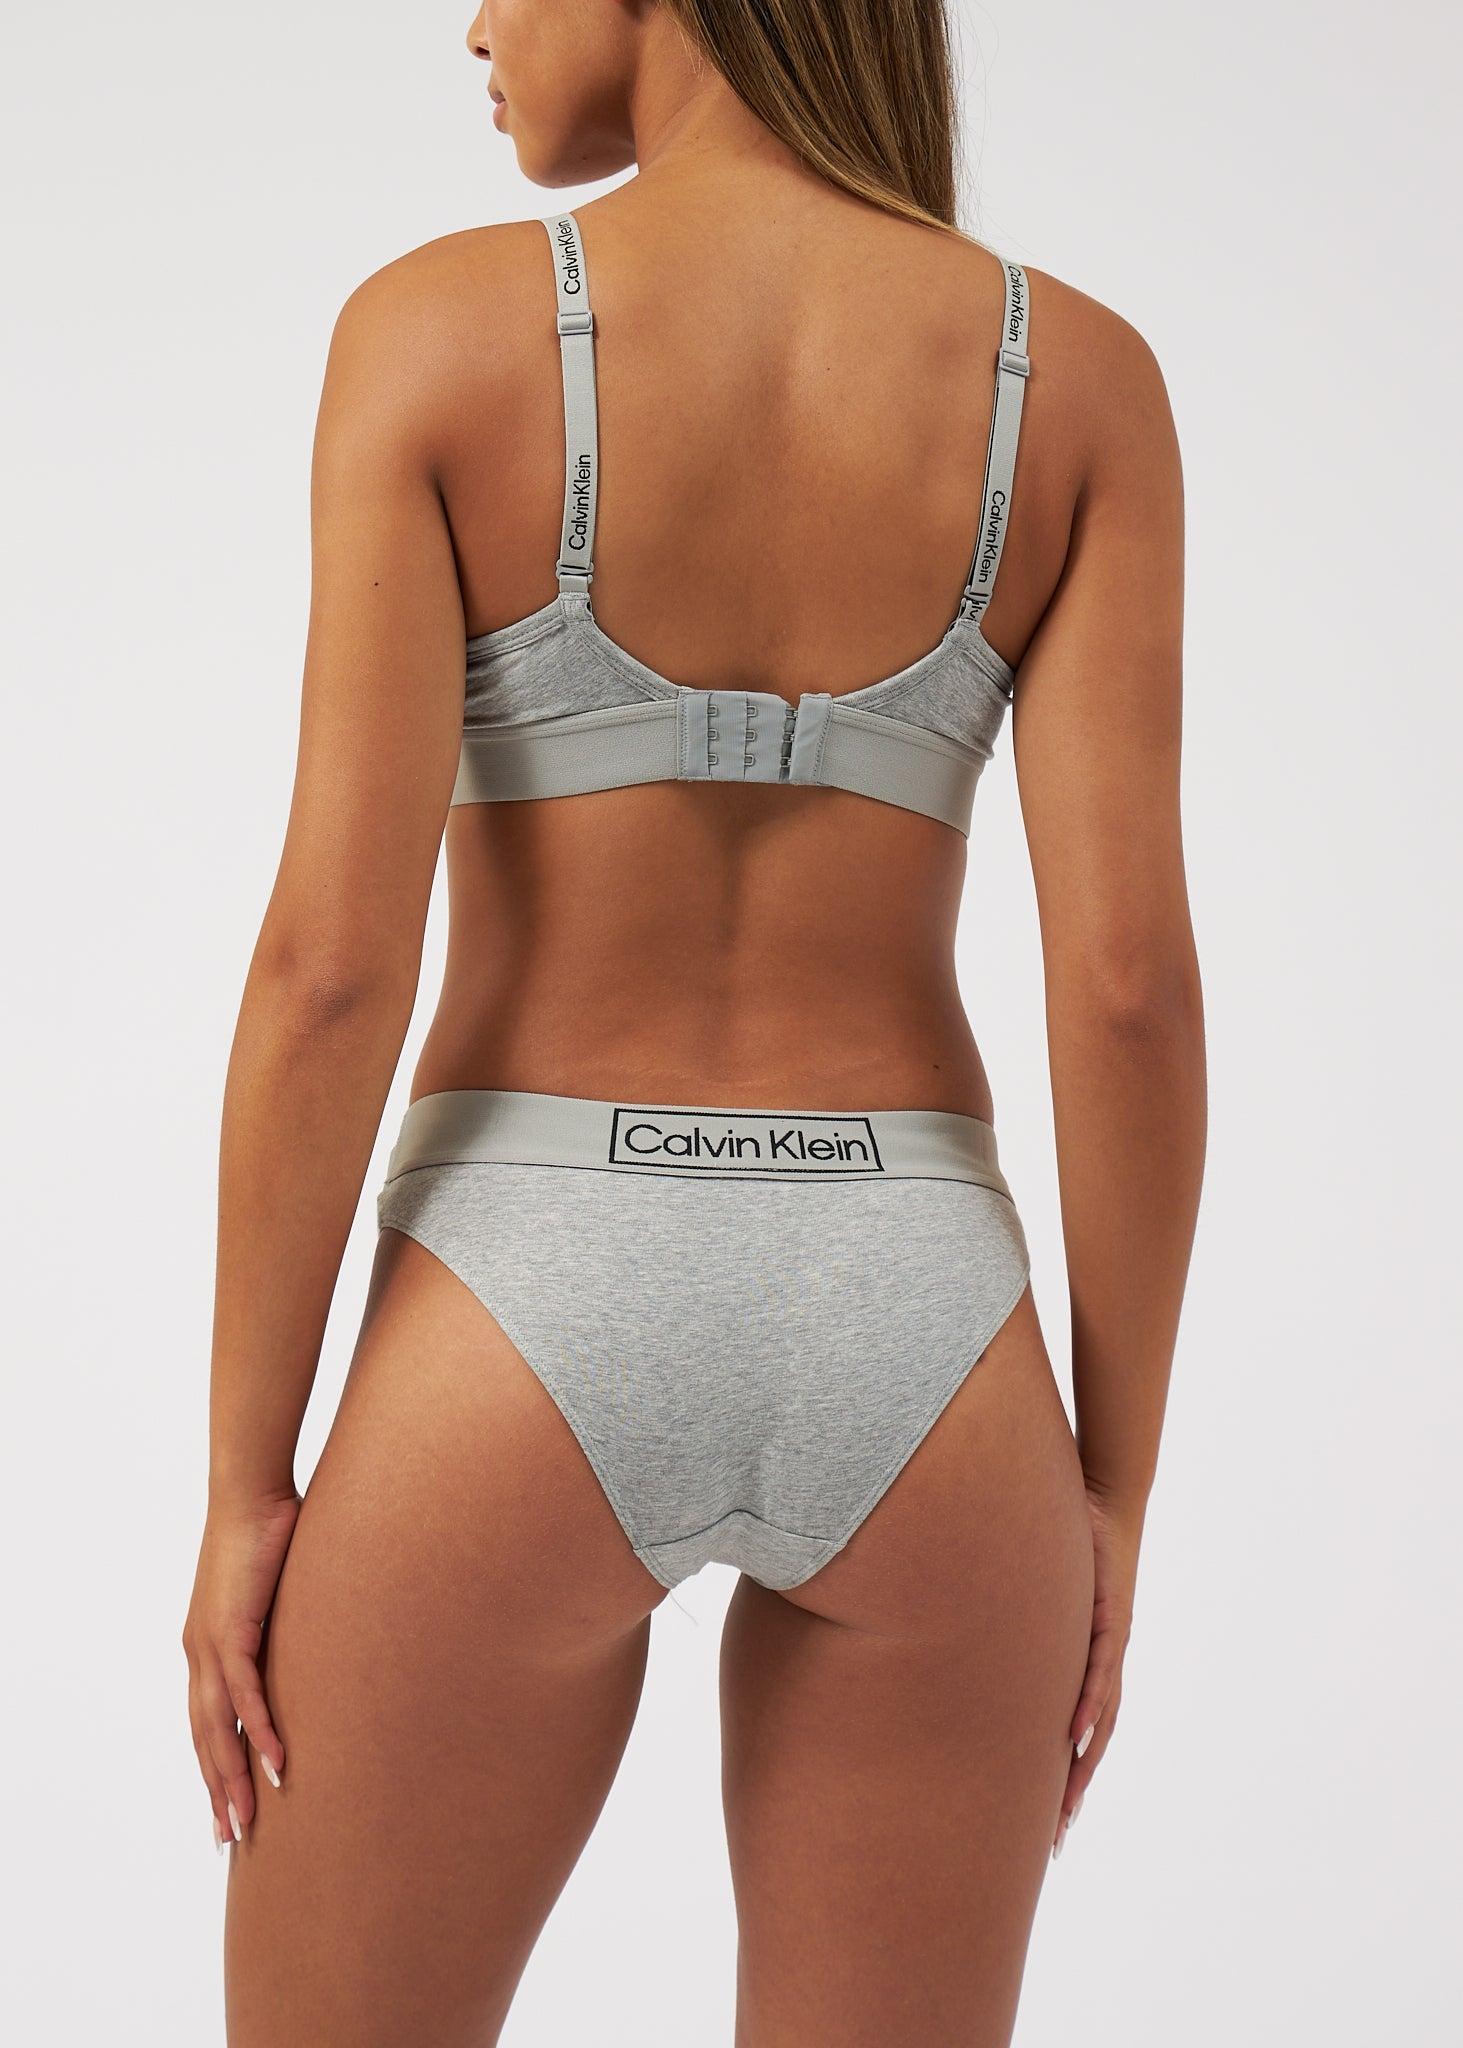 Calvin Klein Underwear Reimagined Heritage Bikini Briefs in Gray | Lyst